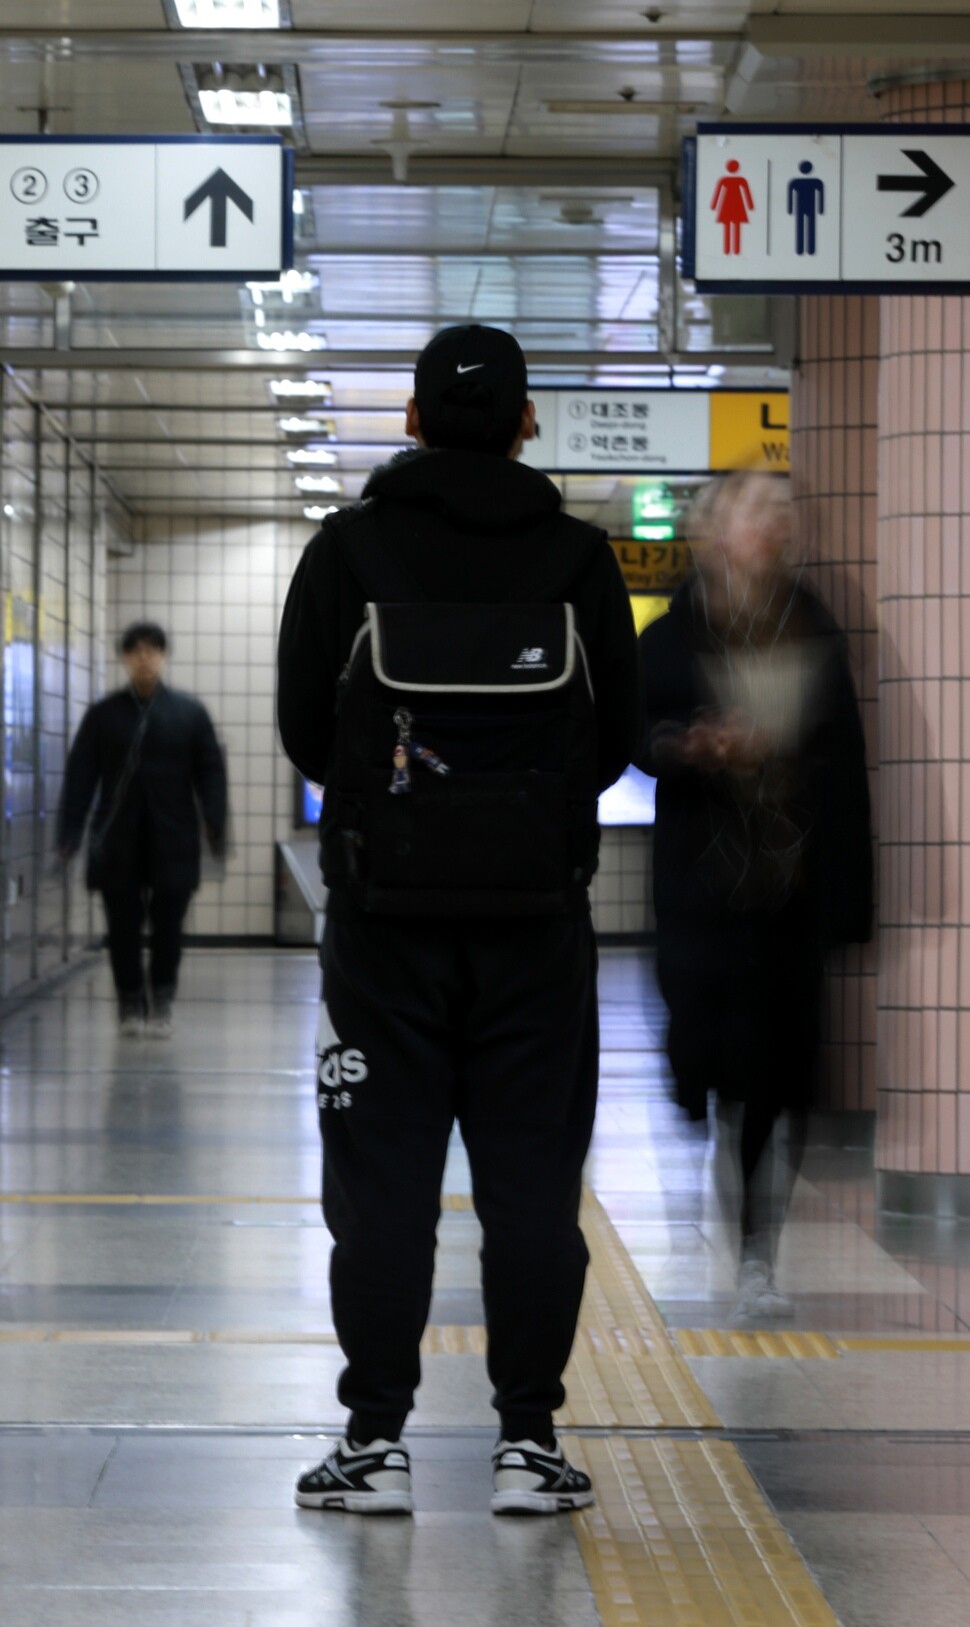 지난 2월 아동양육시설에서 퇴소한 김규석(가명)군이 3월19일 오전 지하철역 출구 앞에 서 있다. 류우종 기자